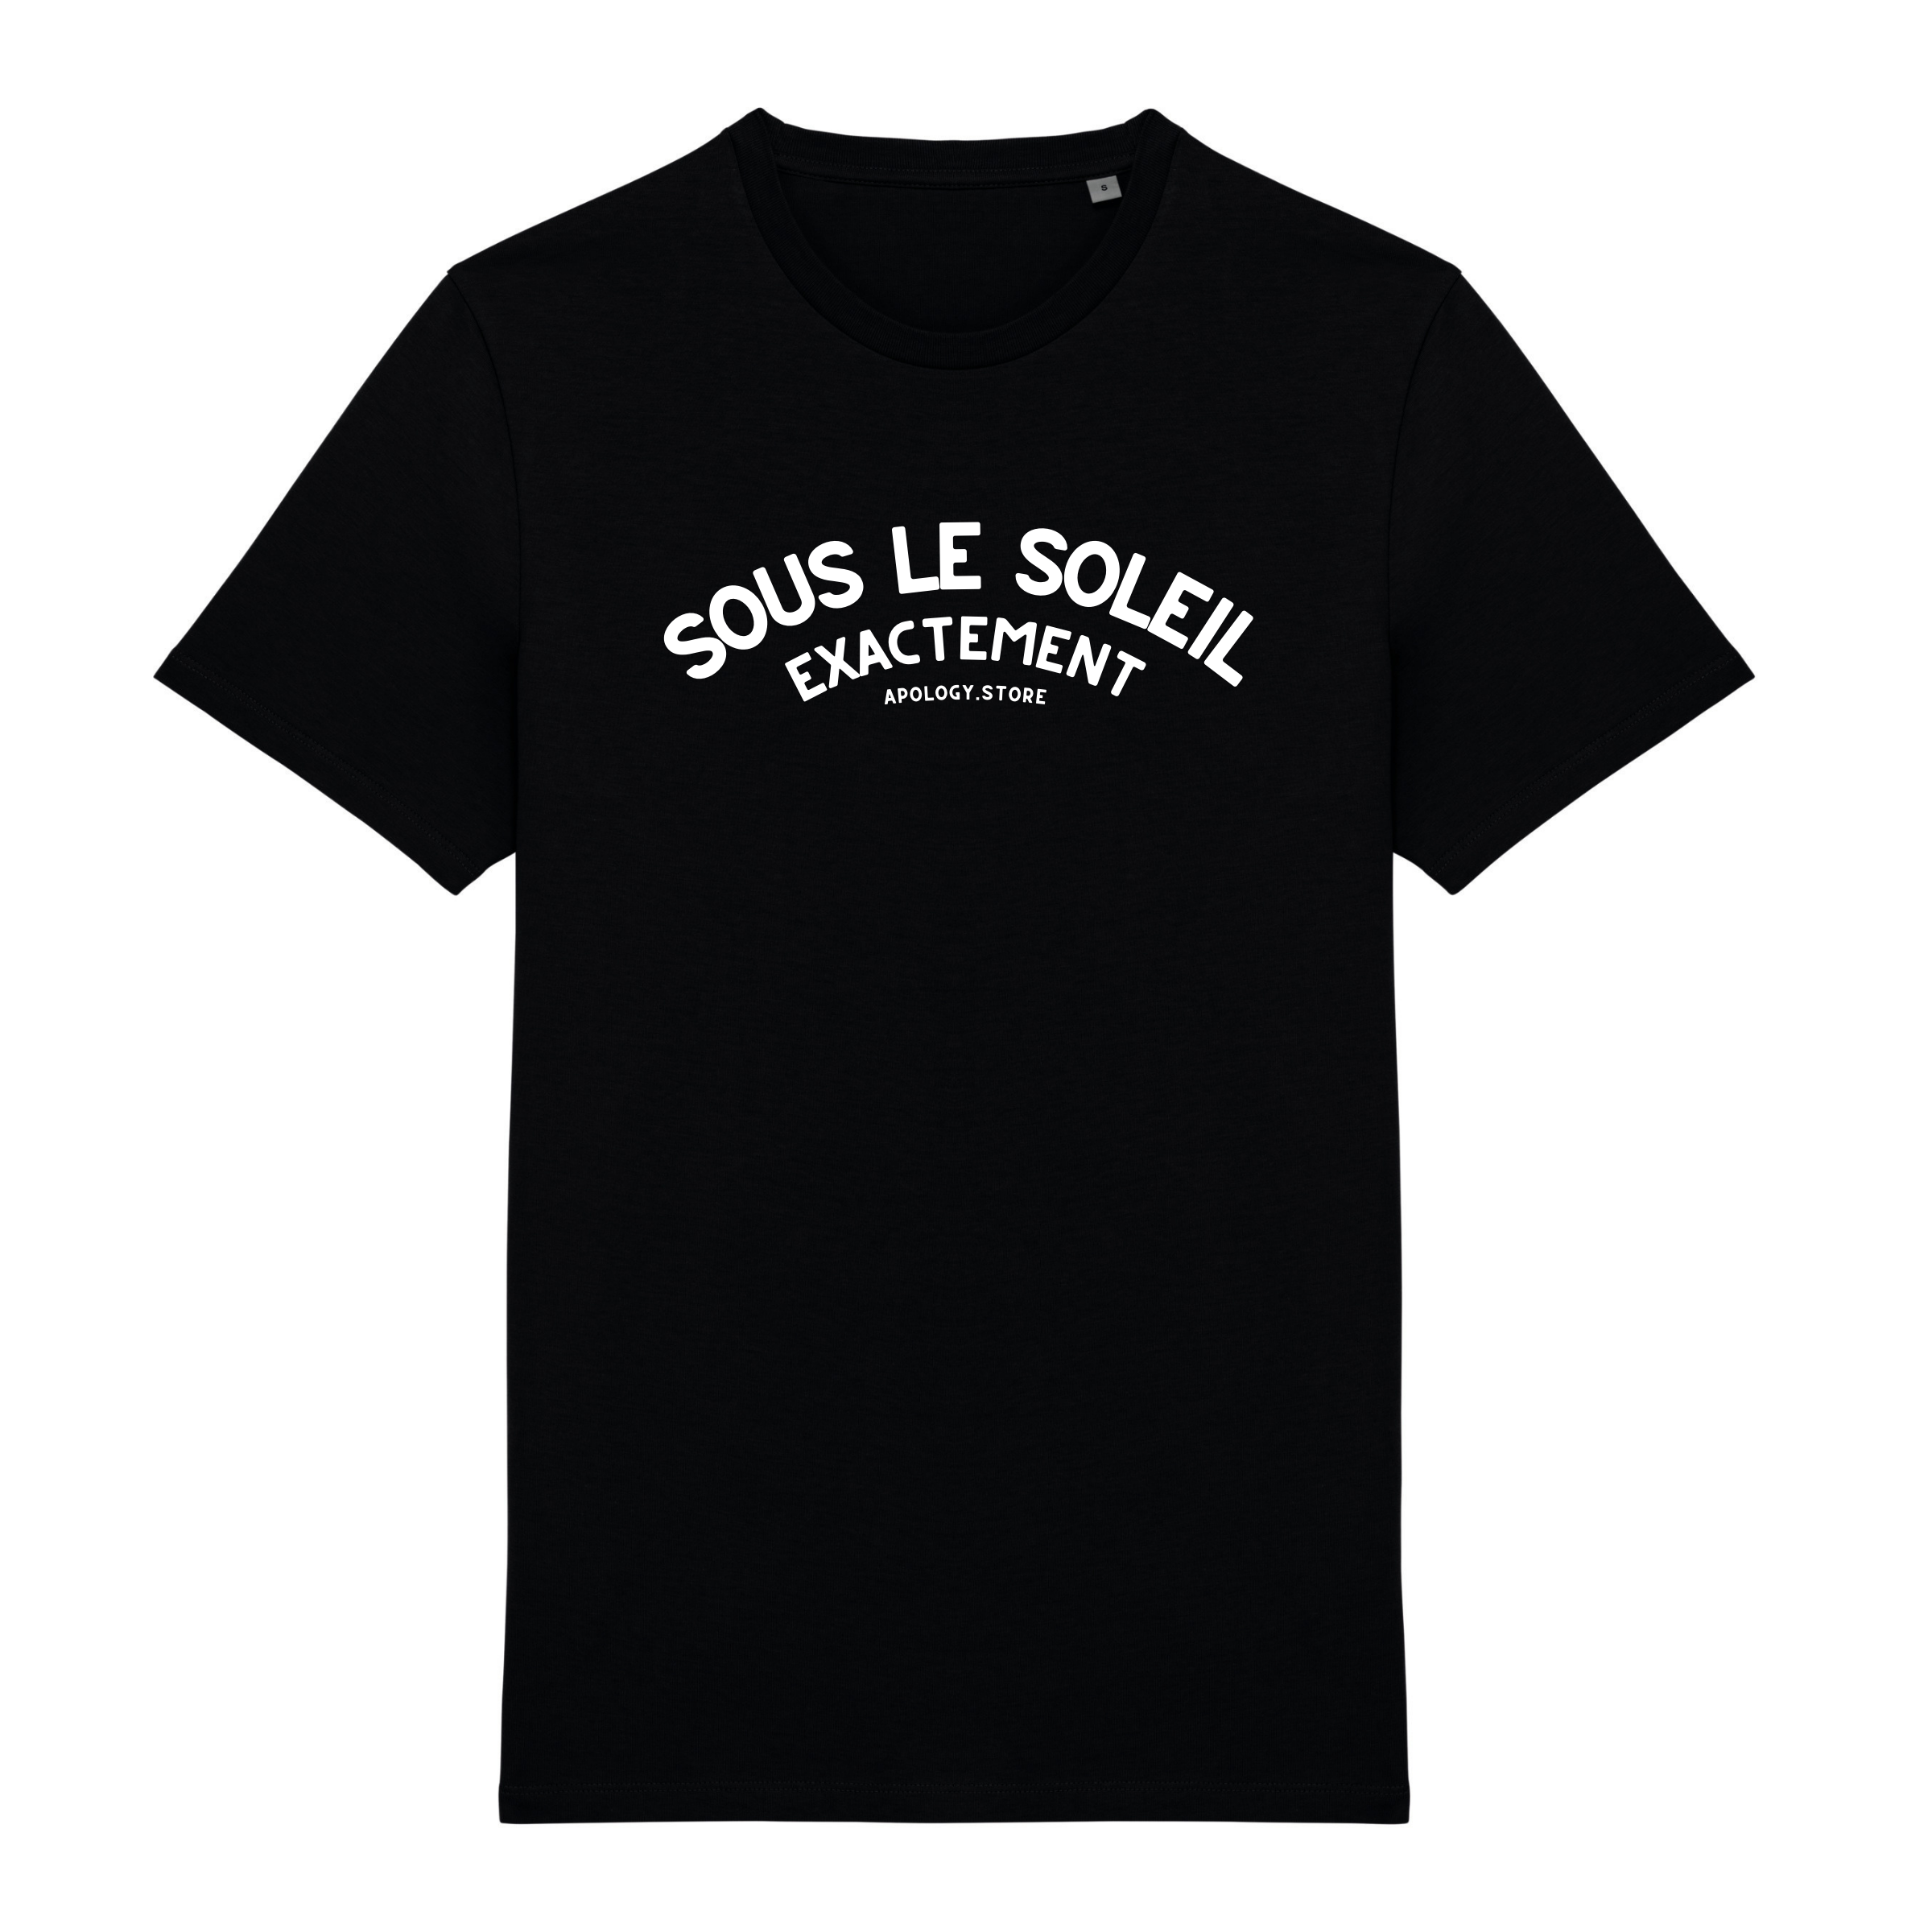 T-shirt Sous le Soleil Exactement - Fabriqué au Portugal XS Noir - Imprimé en France